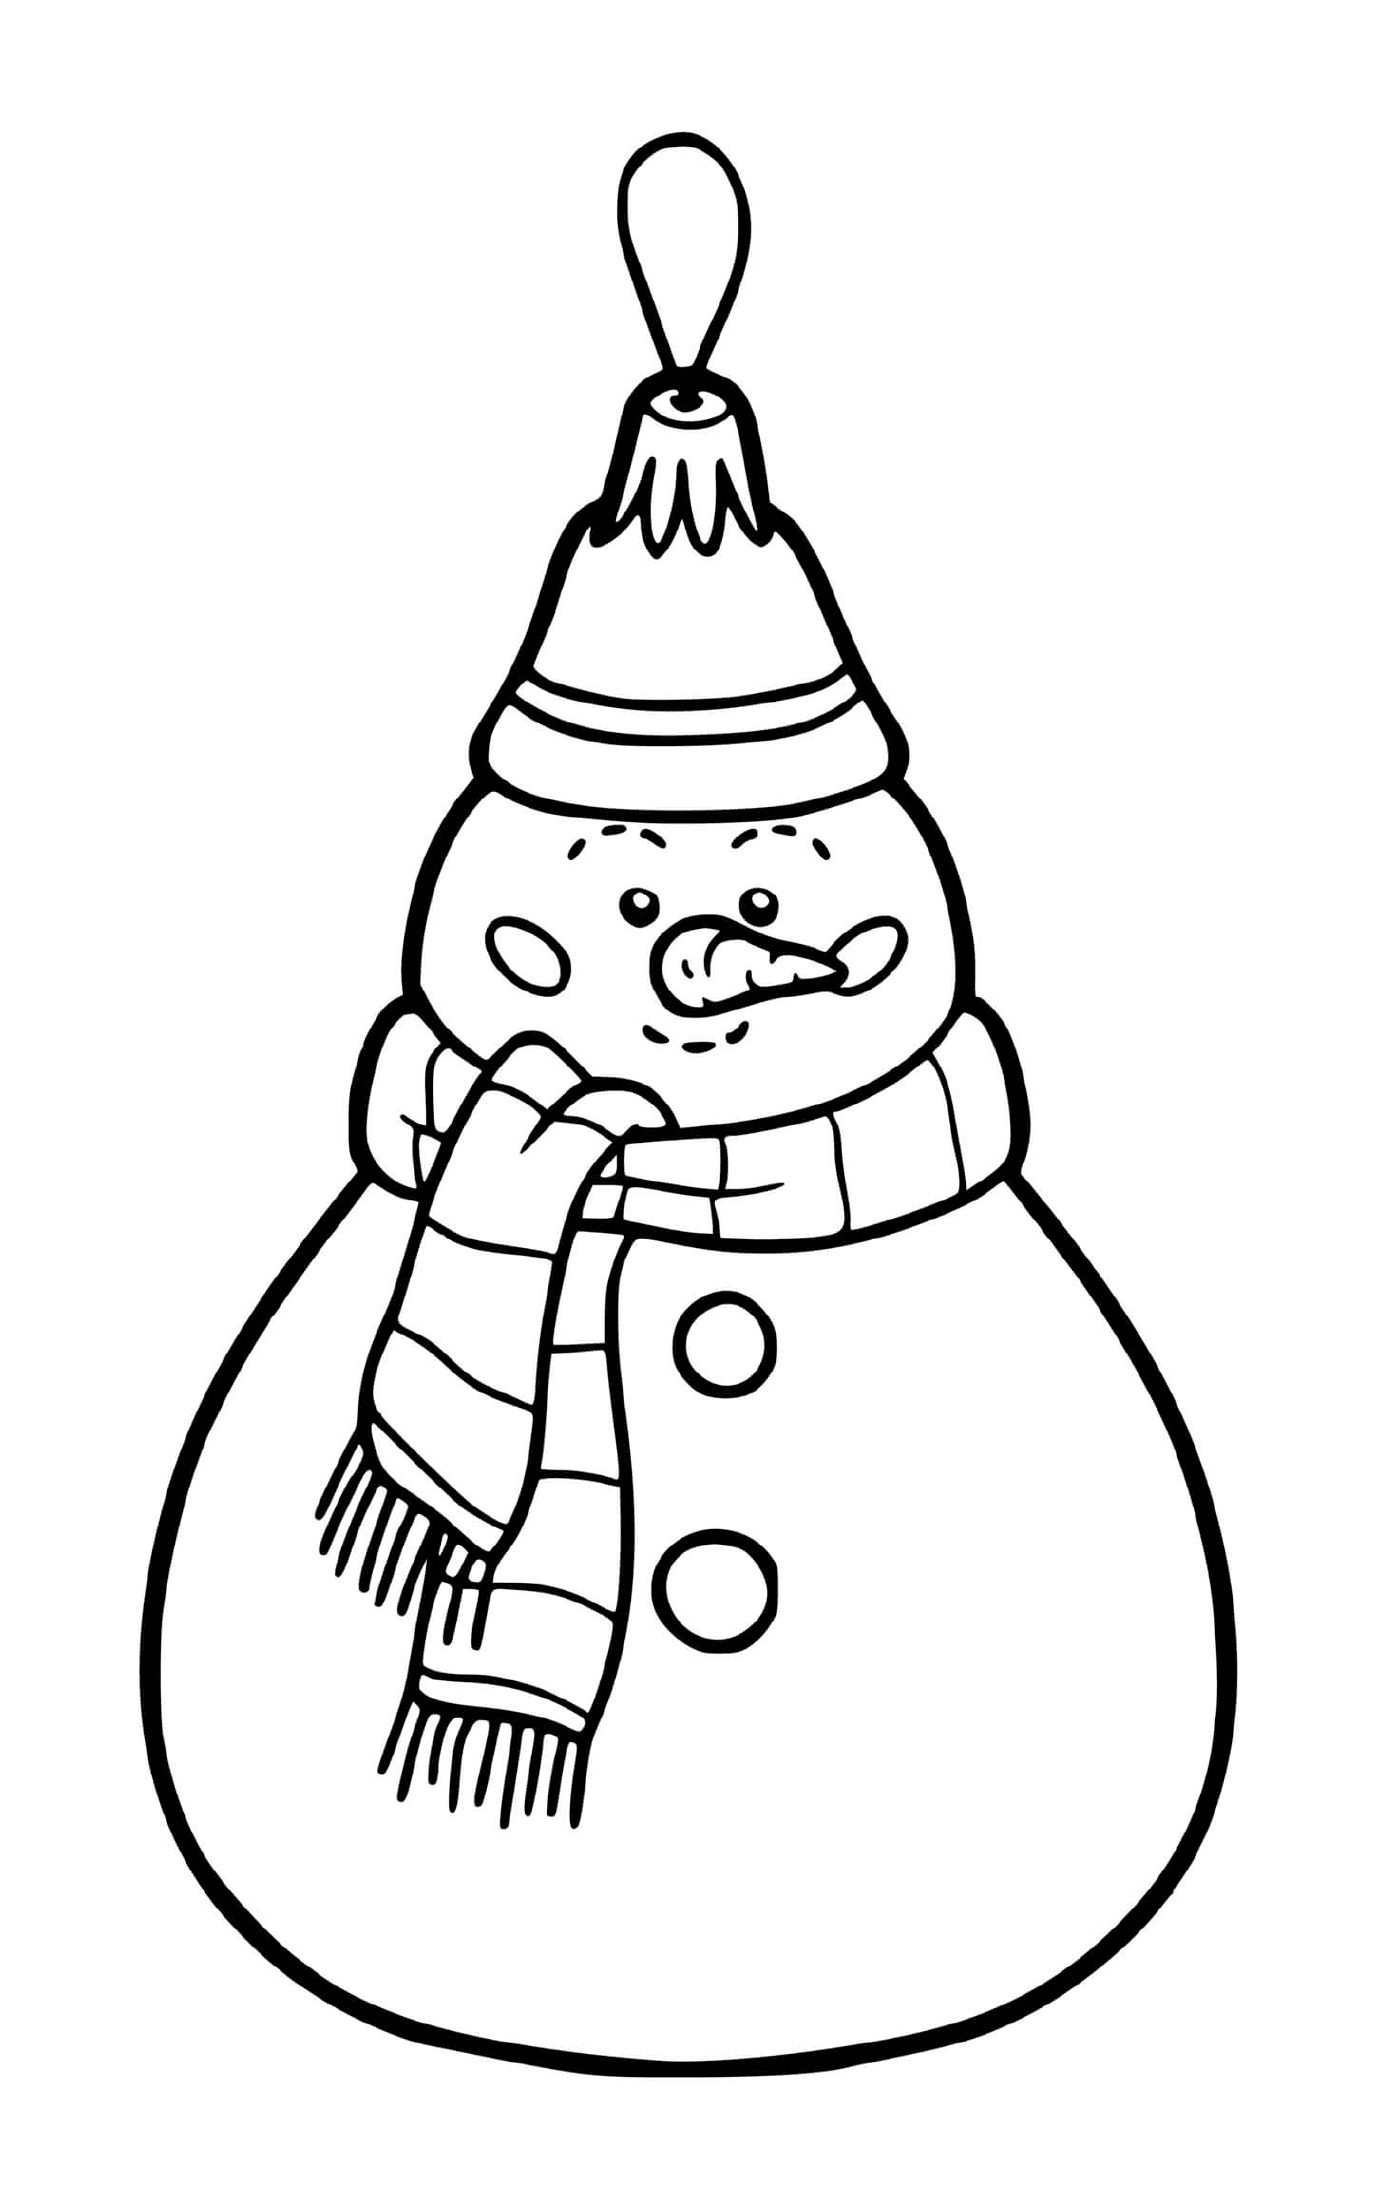  Ein Weihnachtsball in Form eines Schneemanns für einen Baum 